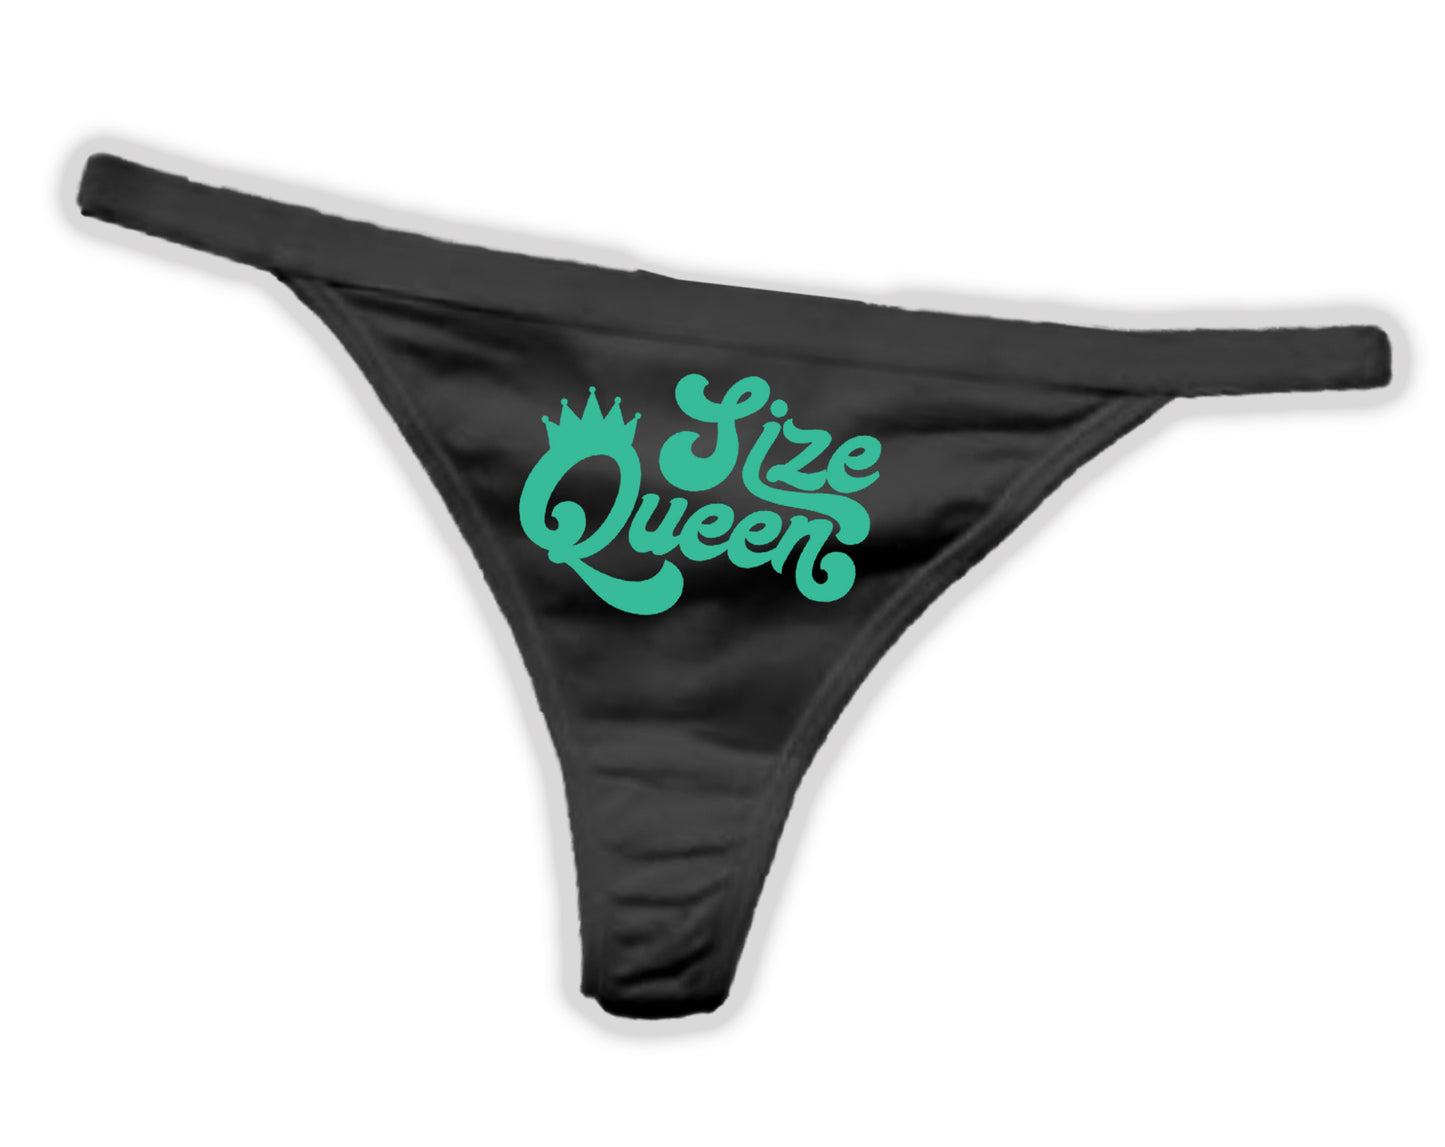 Size Queen Panties